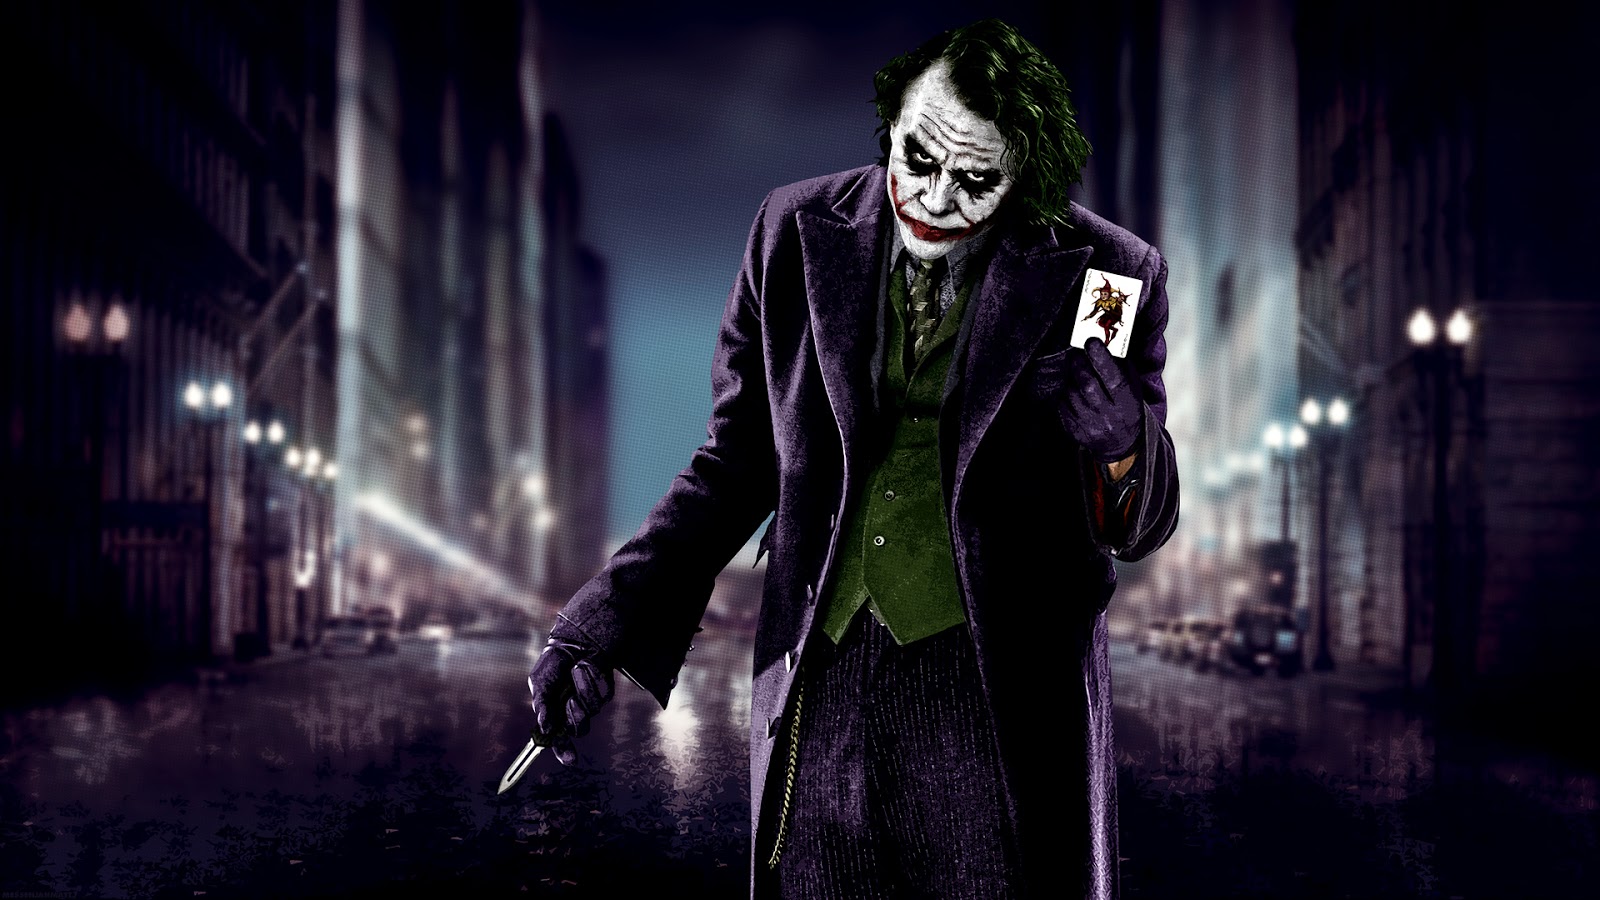 Joker Wallpaper Pictures